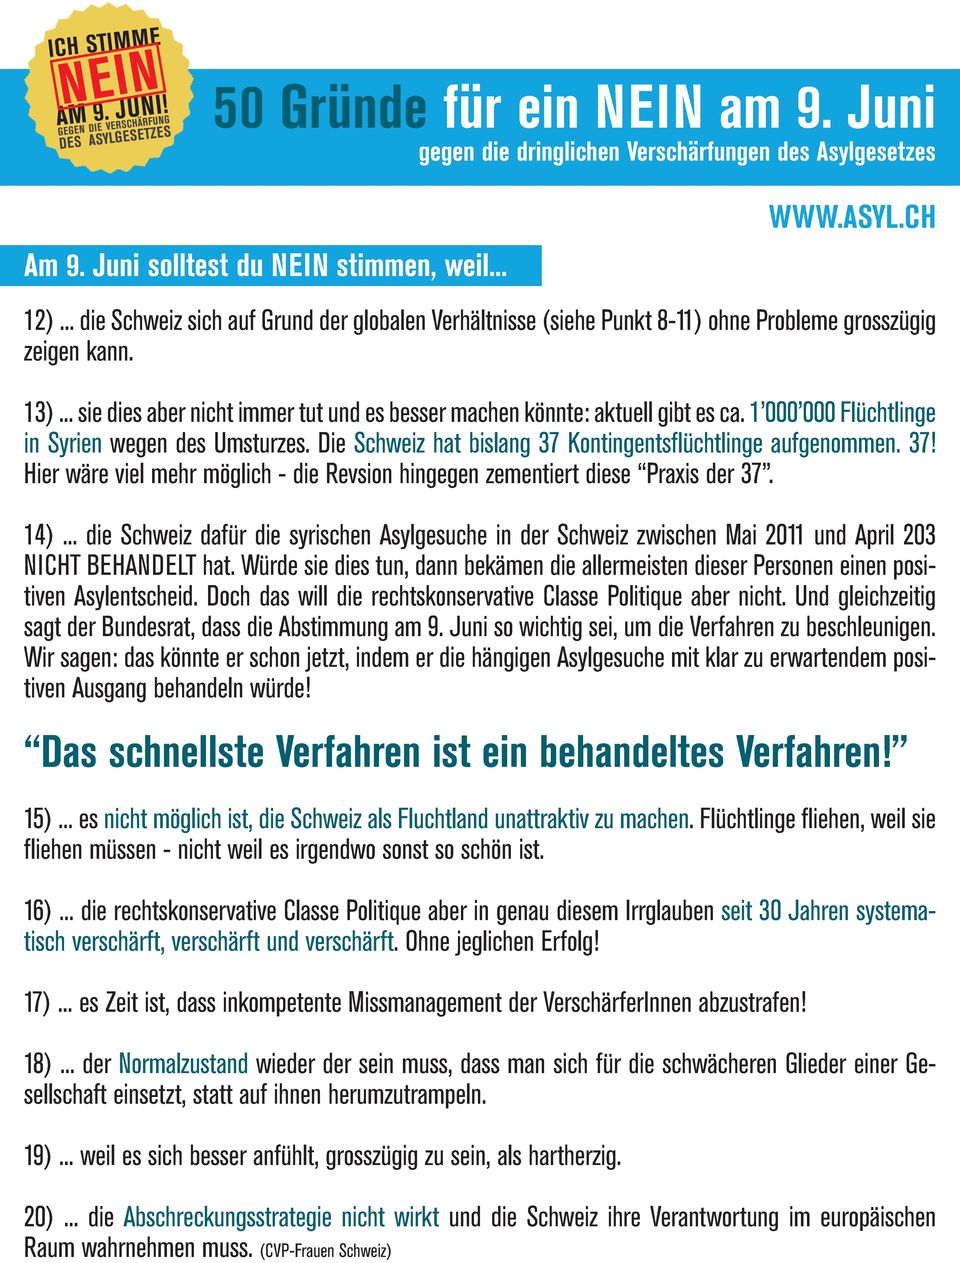 14)... die Schweiz dafür die syrischen Asylgesuche in der Schweiz zwischen Mai 2011 und April 203 NICHT BEHANDELT hat.